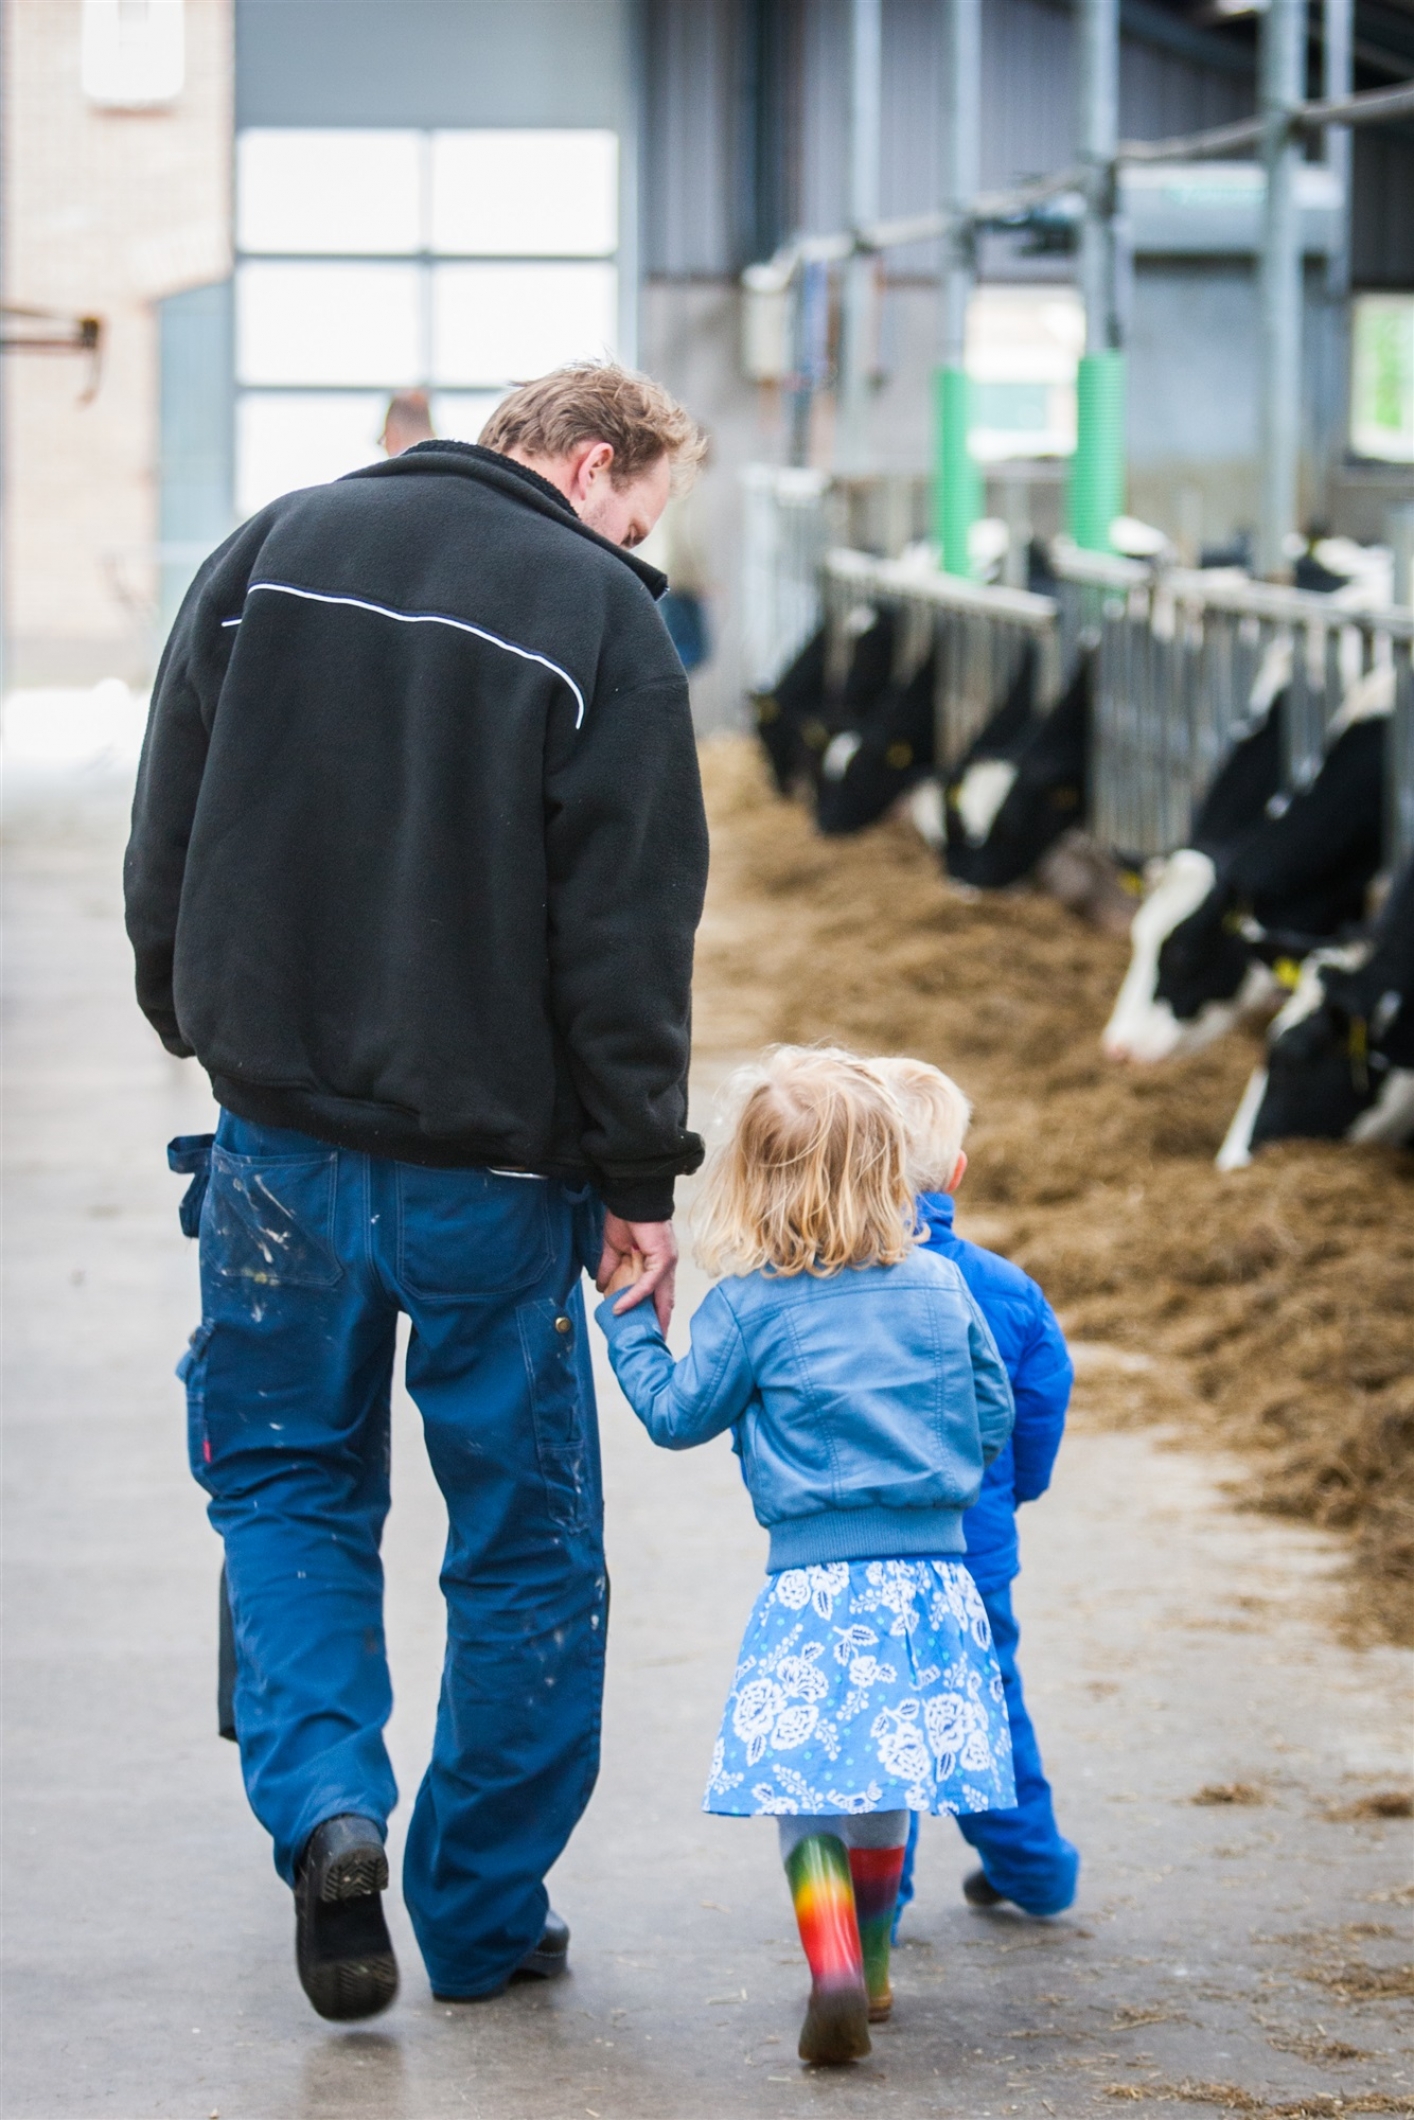 Boer wandelt met zijn dochtertje in de stal waar koeien hooi eten